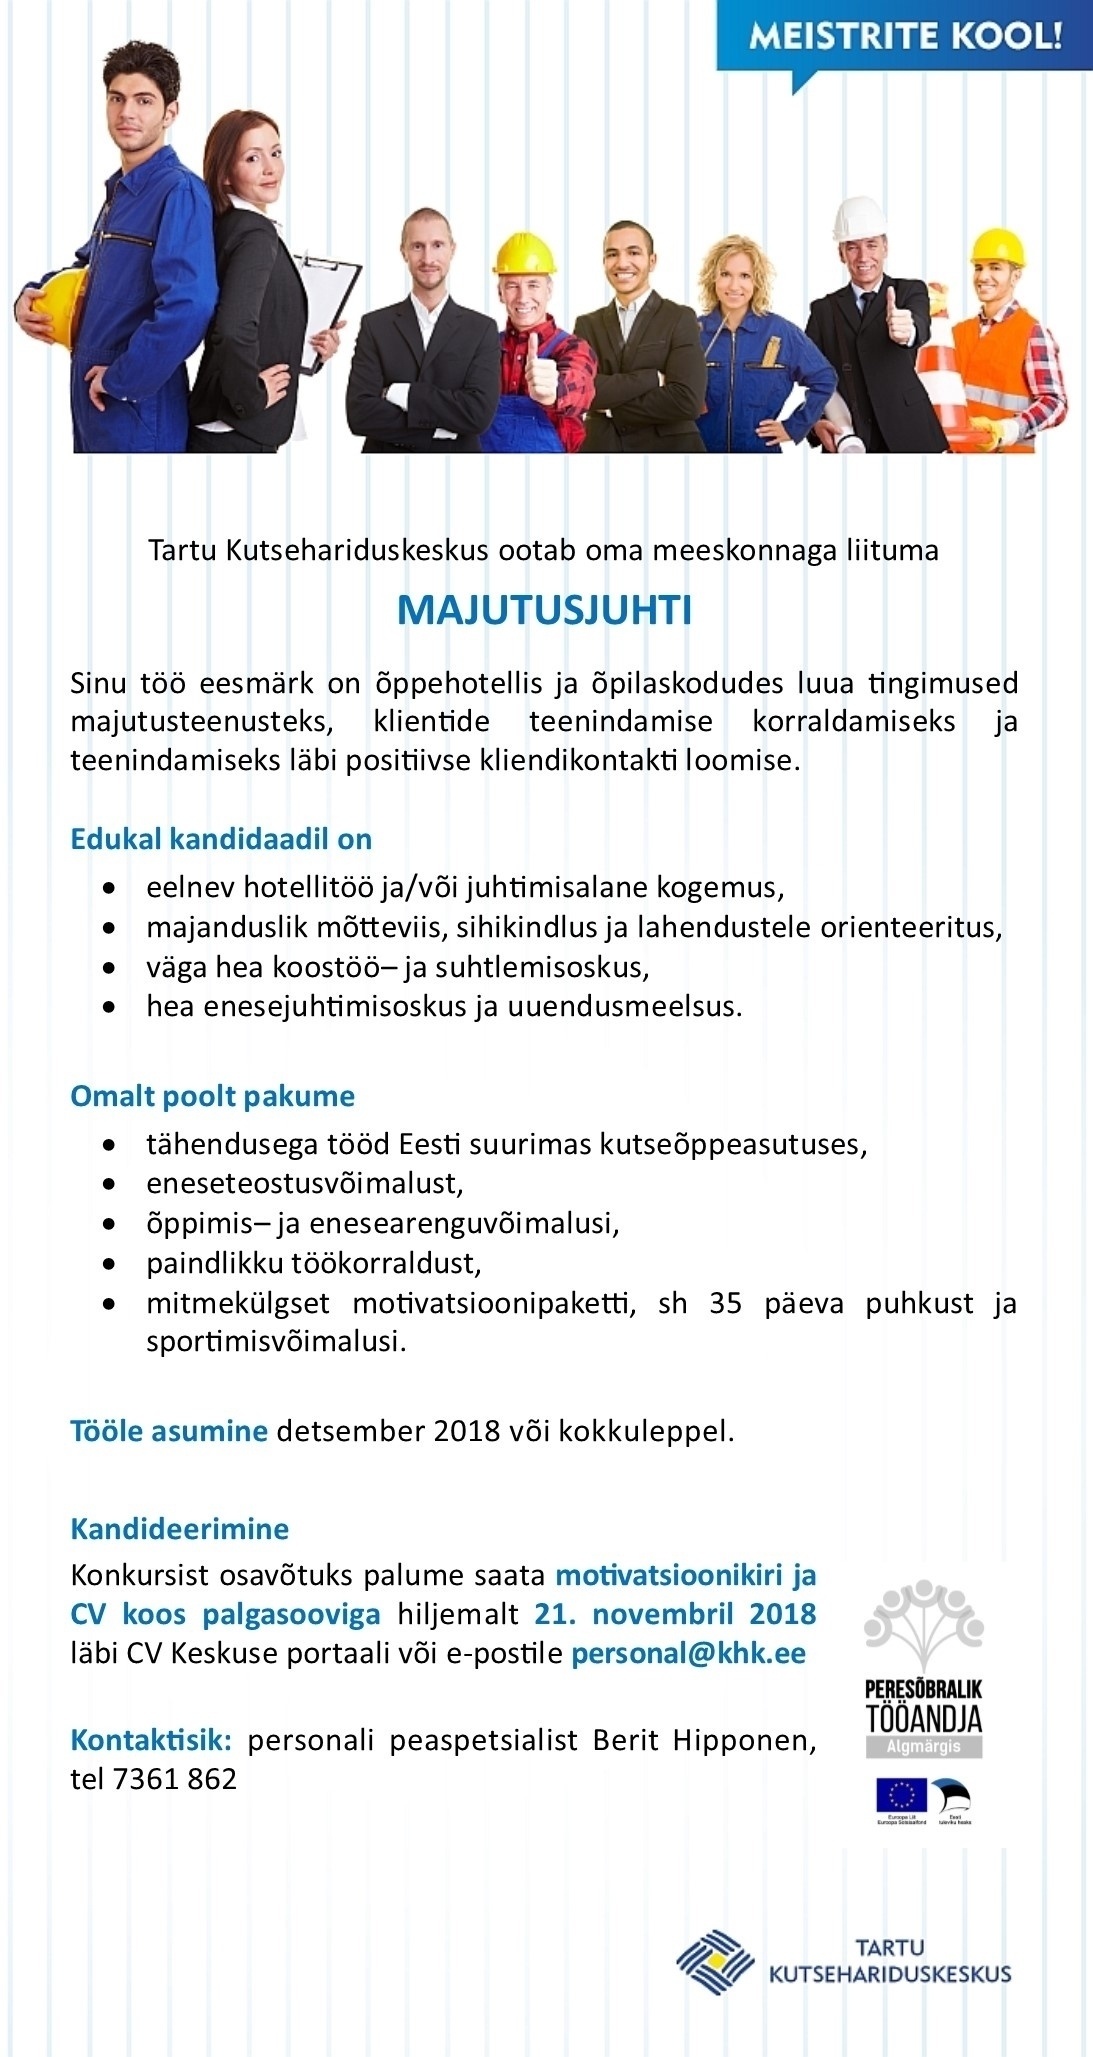 Tartu Kutsehariduskeskus Majutusjuht